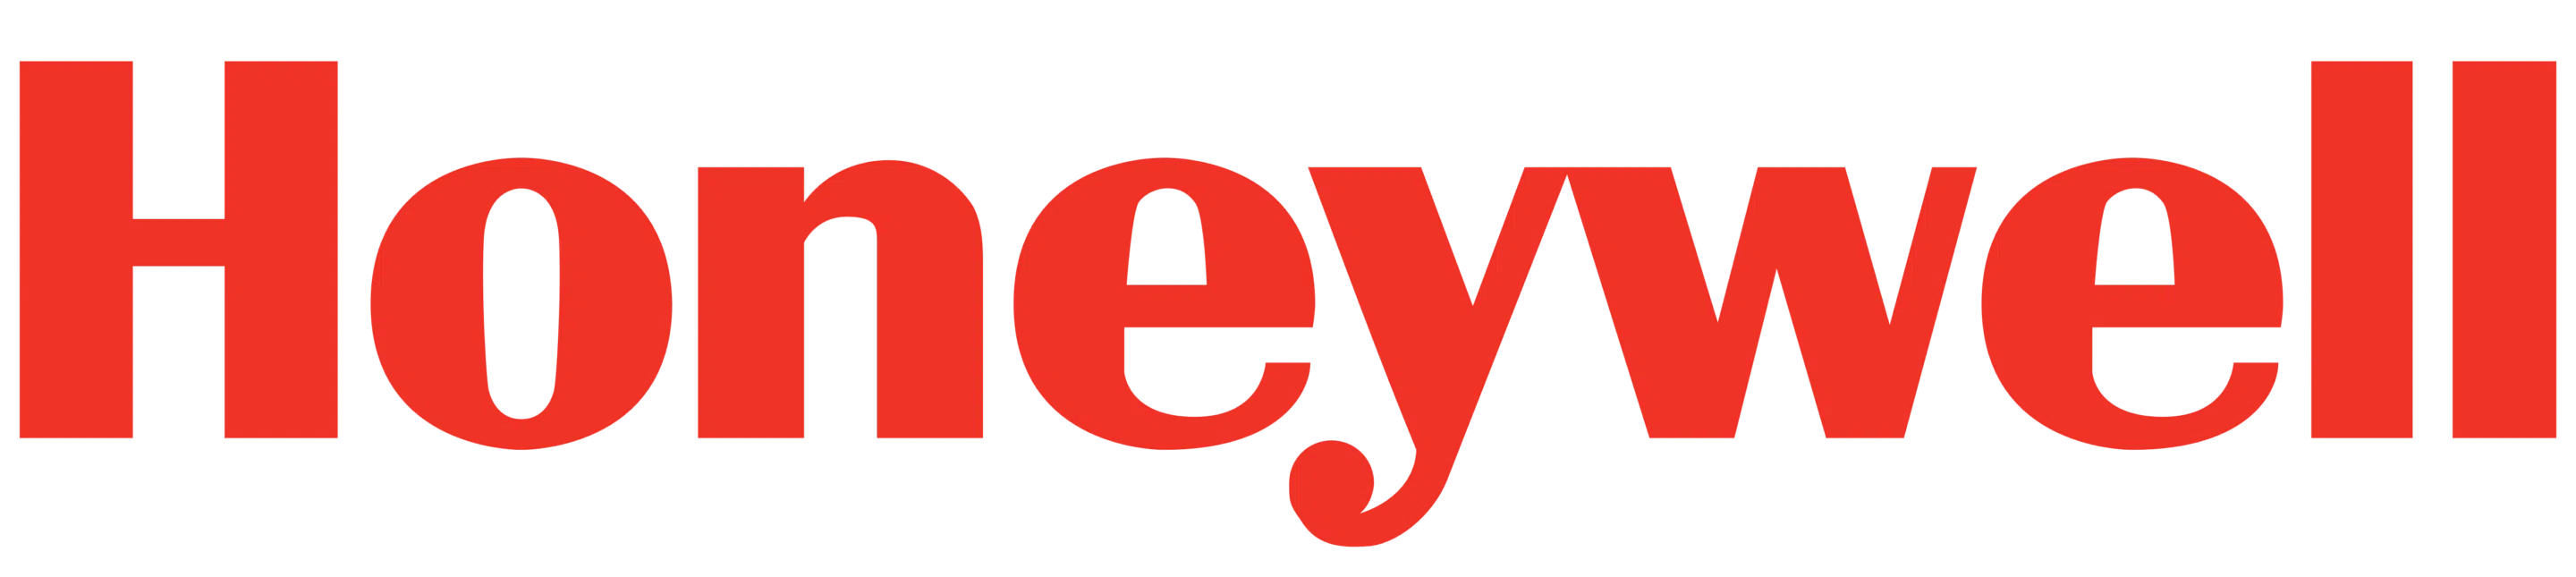 Honeywell logo 1 - meilleures applications